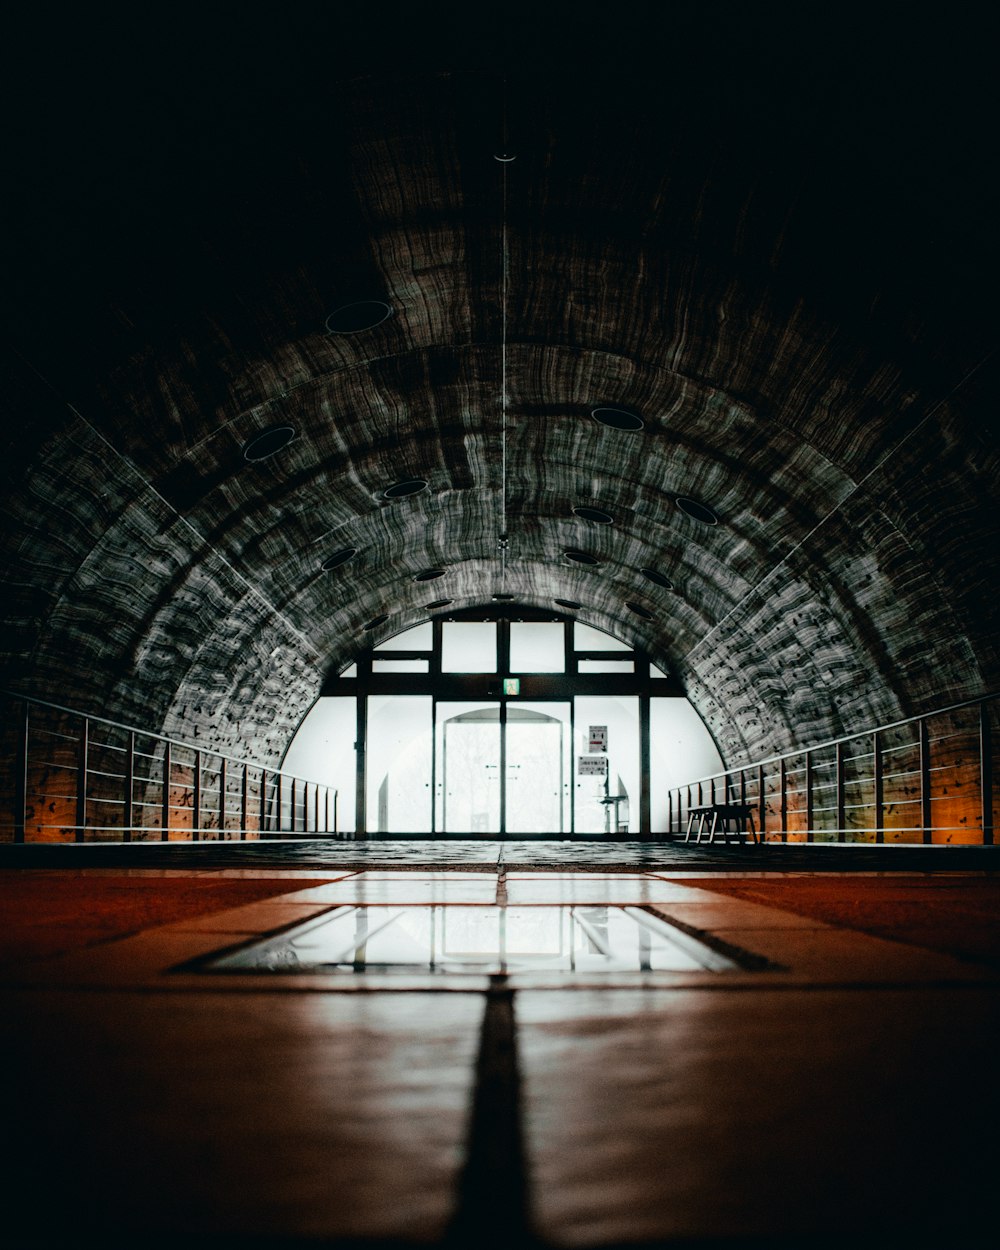 Brauner und grauer Tunnel mit Glasfenstern